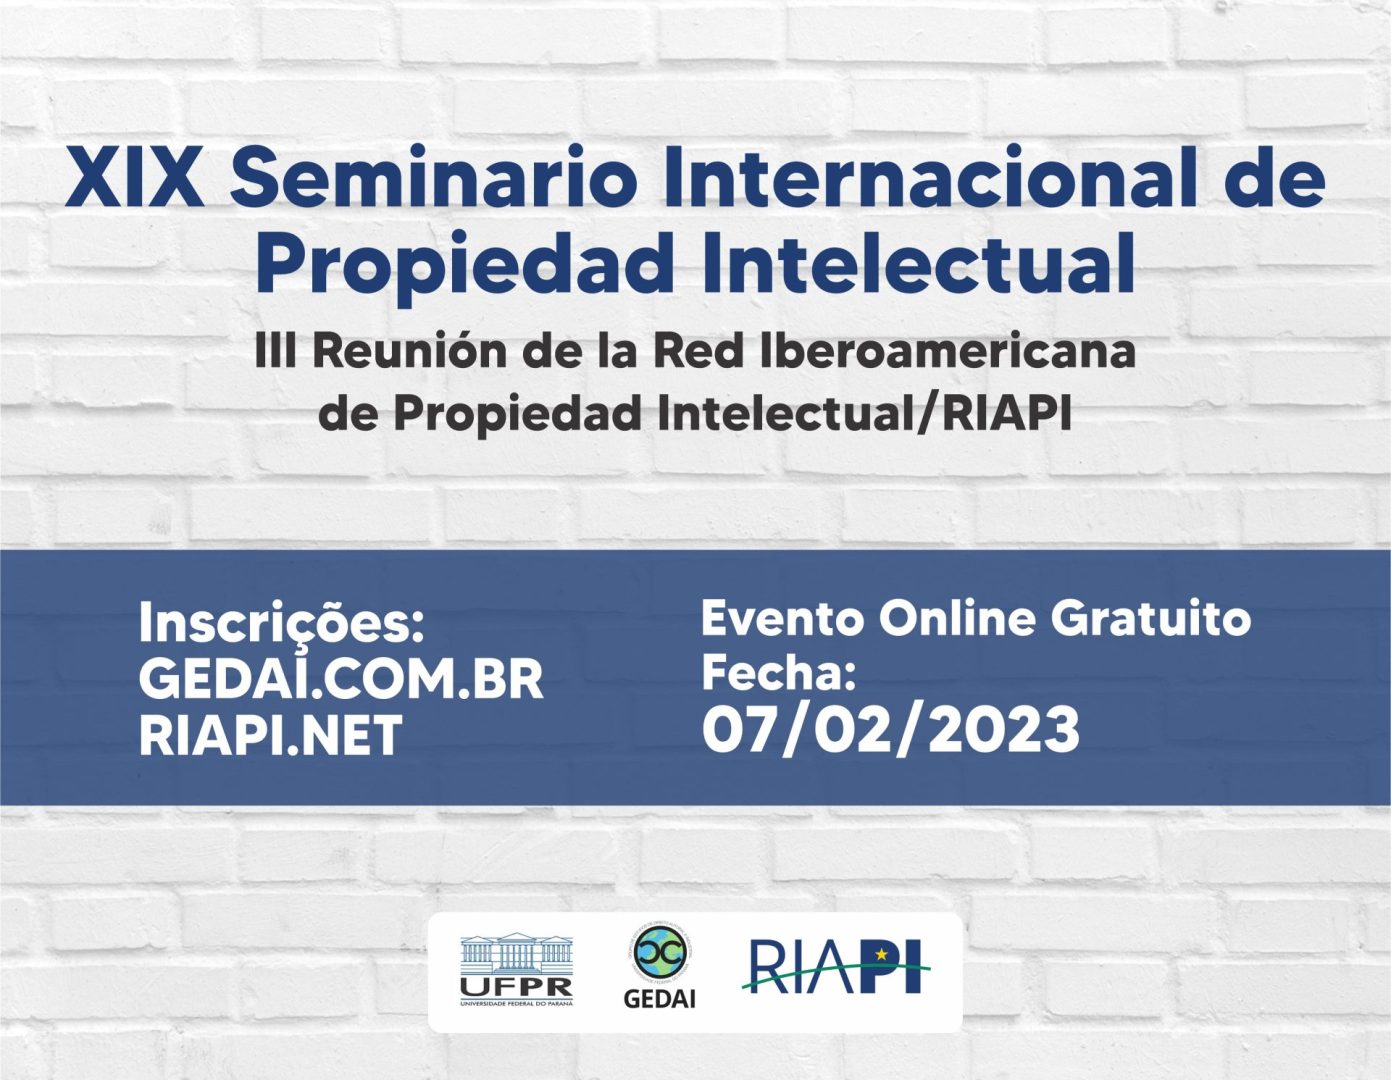 XIX Seminario Internacional de Propiedad Intelectual III Reunión de la Red Iberoamericana de Propiedad Intelectual/RIAPI